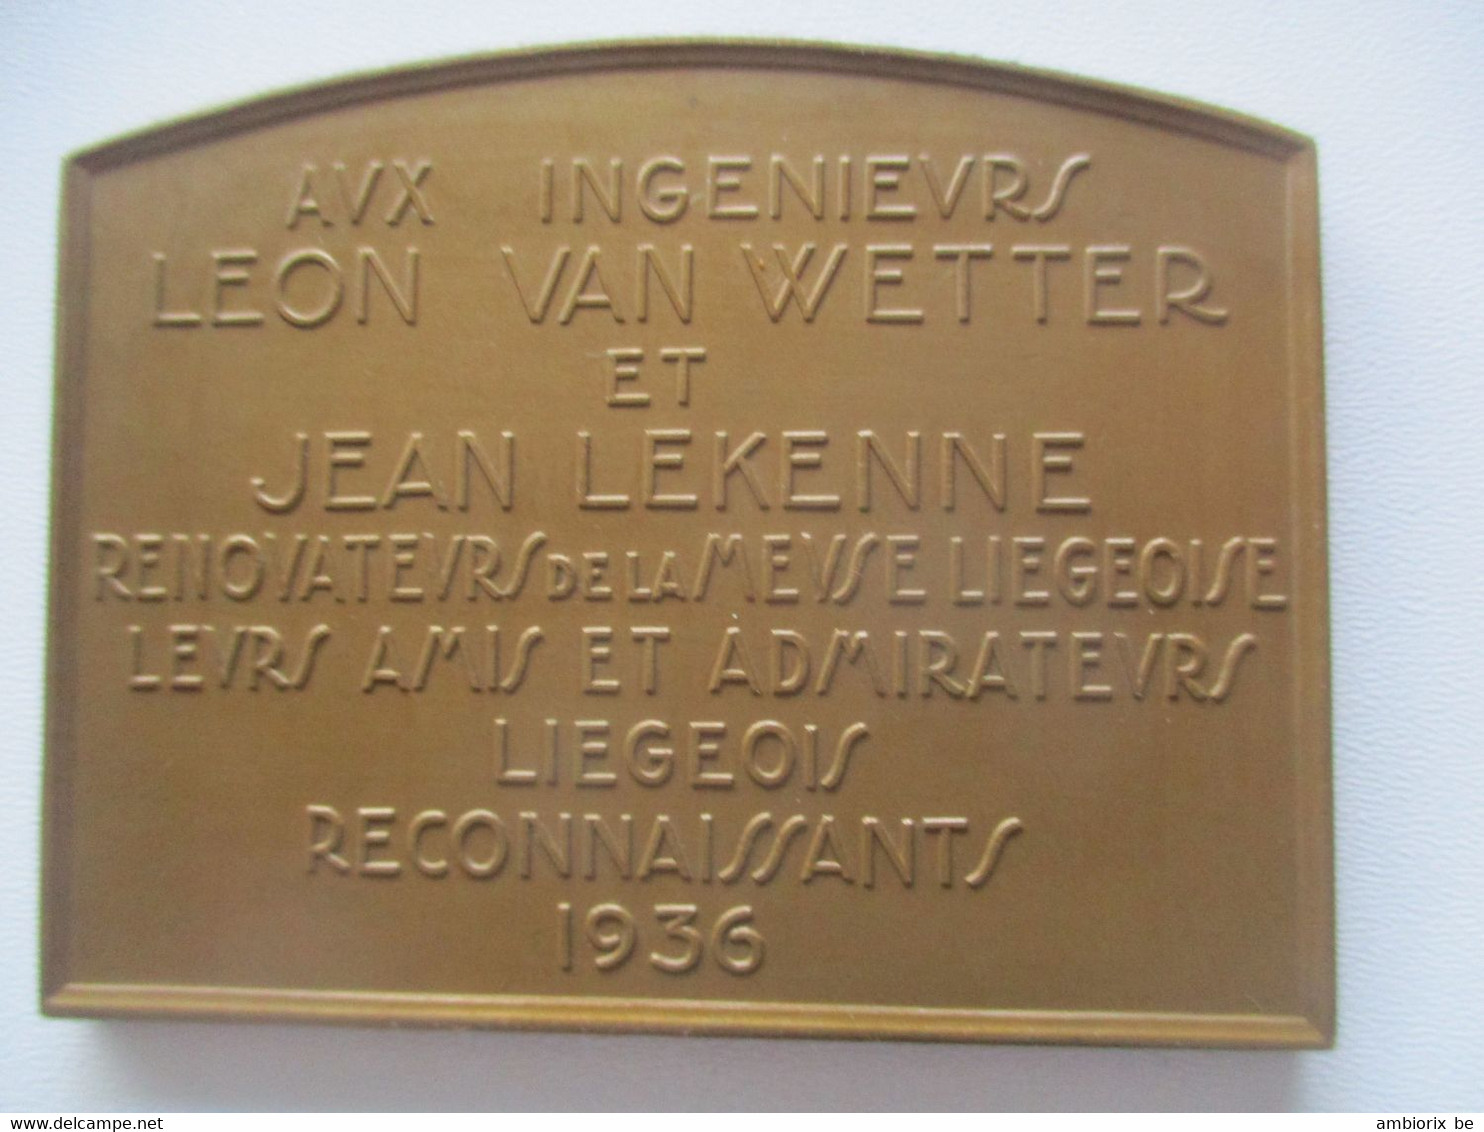 Le Barrage De Monsin à Liège - Aux Ingénieurs Léon Van Wetter Et Jean Lekenne - Tourist